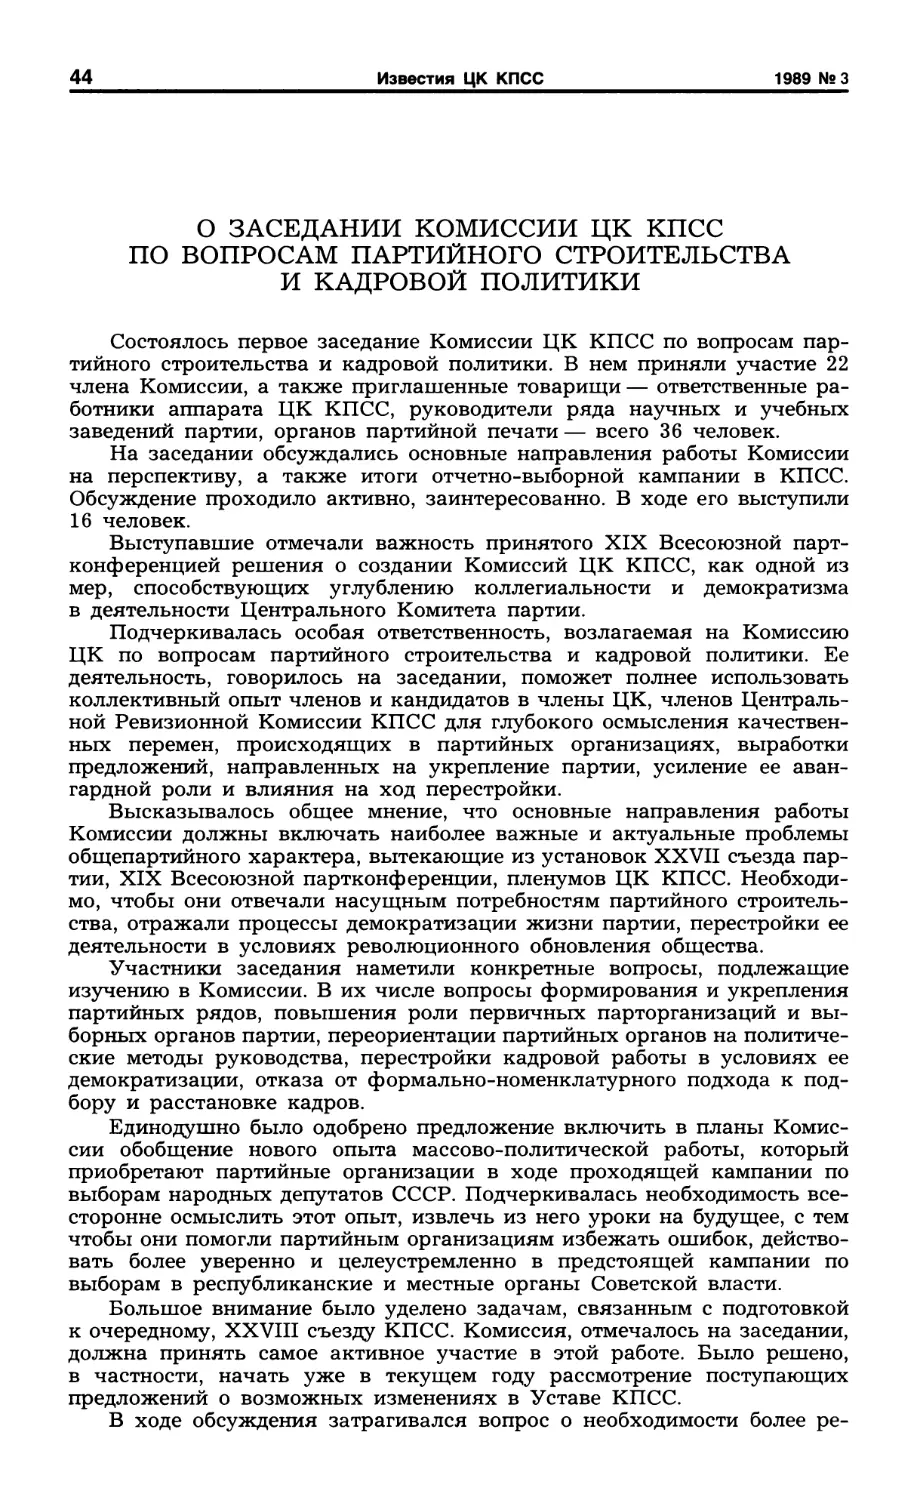 О заседании Комиссии ЦК КПСС по вопросам партийного строительства и кадровой полититки